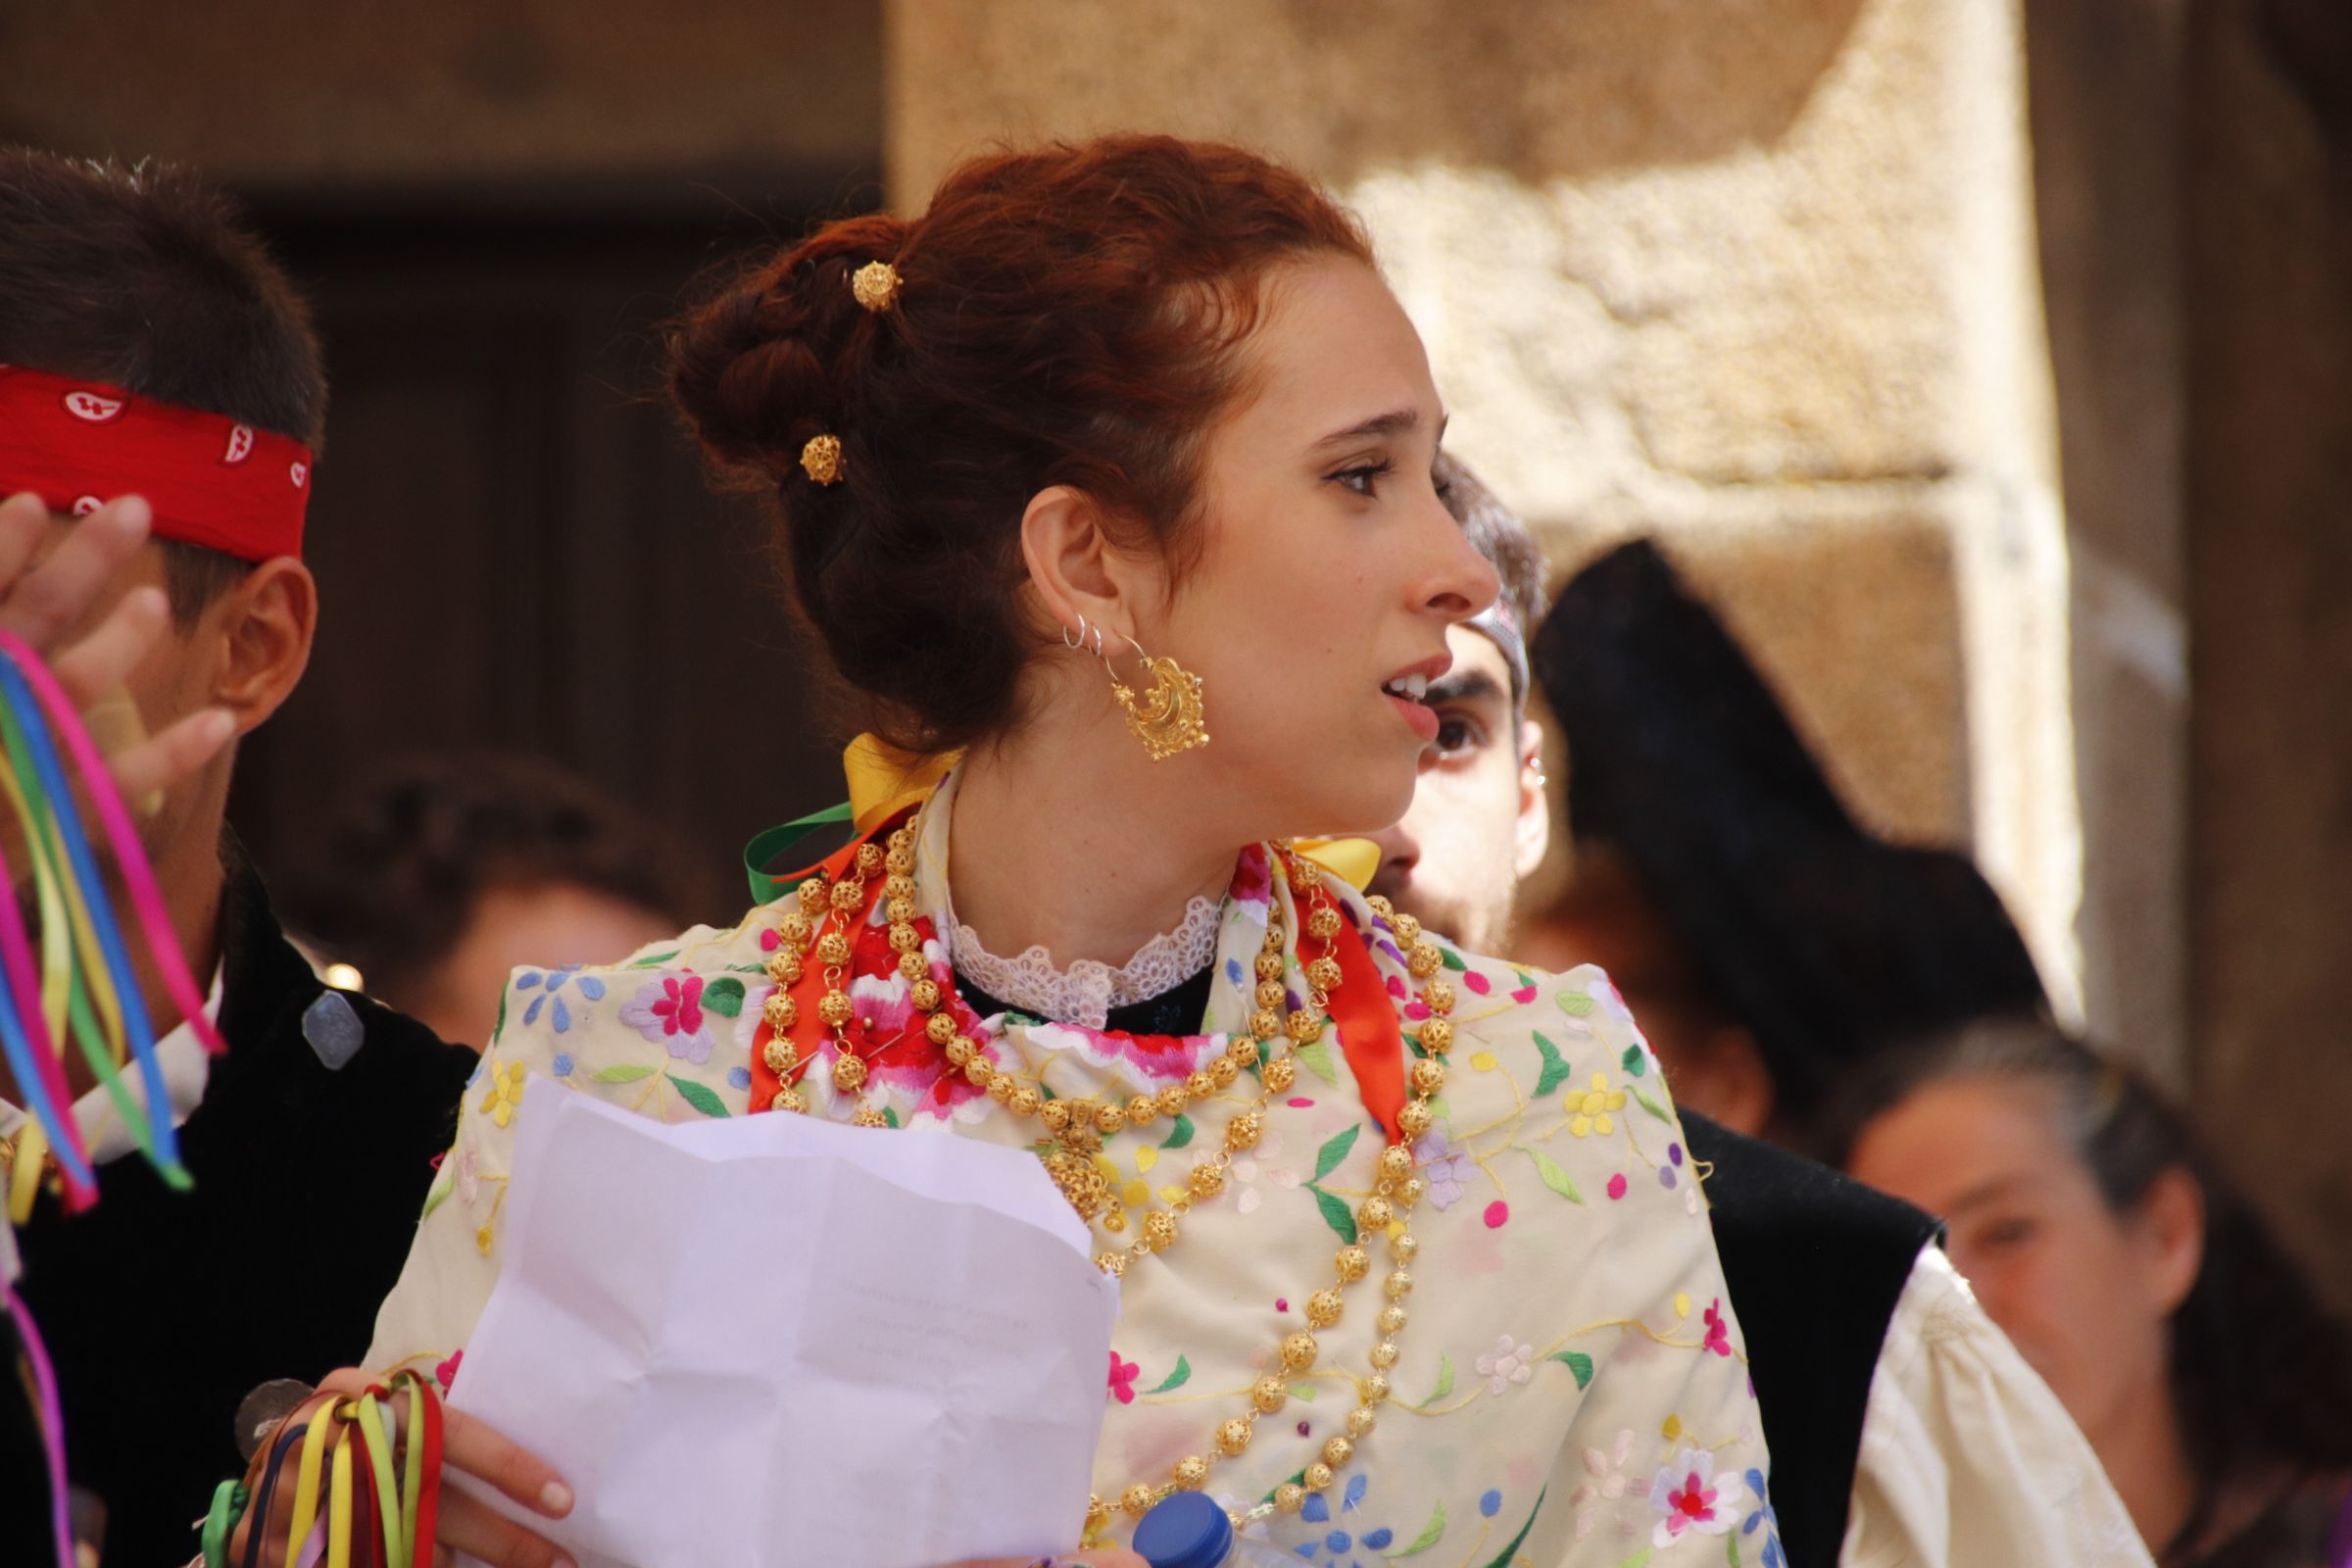 Misa y procesión y ofertorio con bailes tradicionales en Sequeros